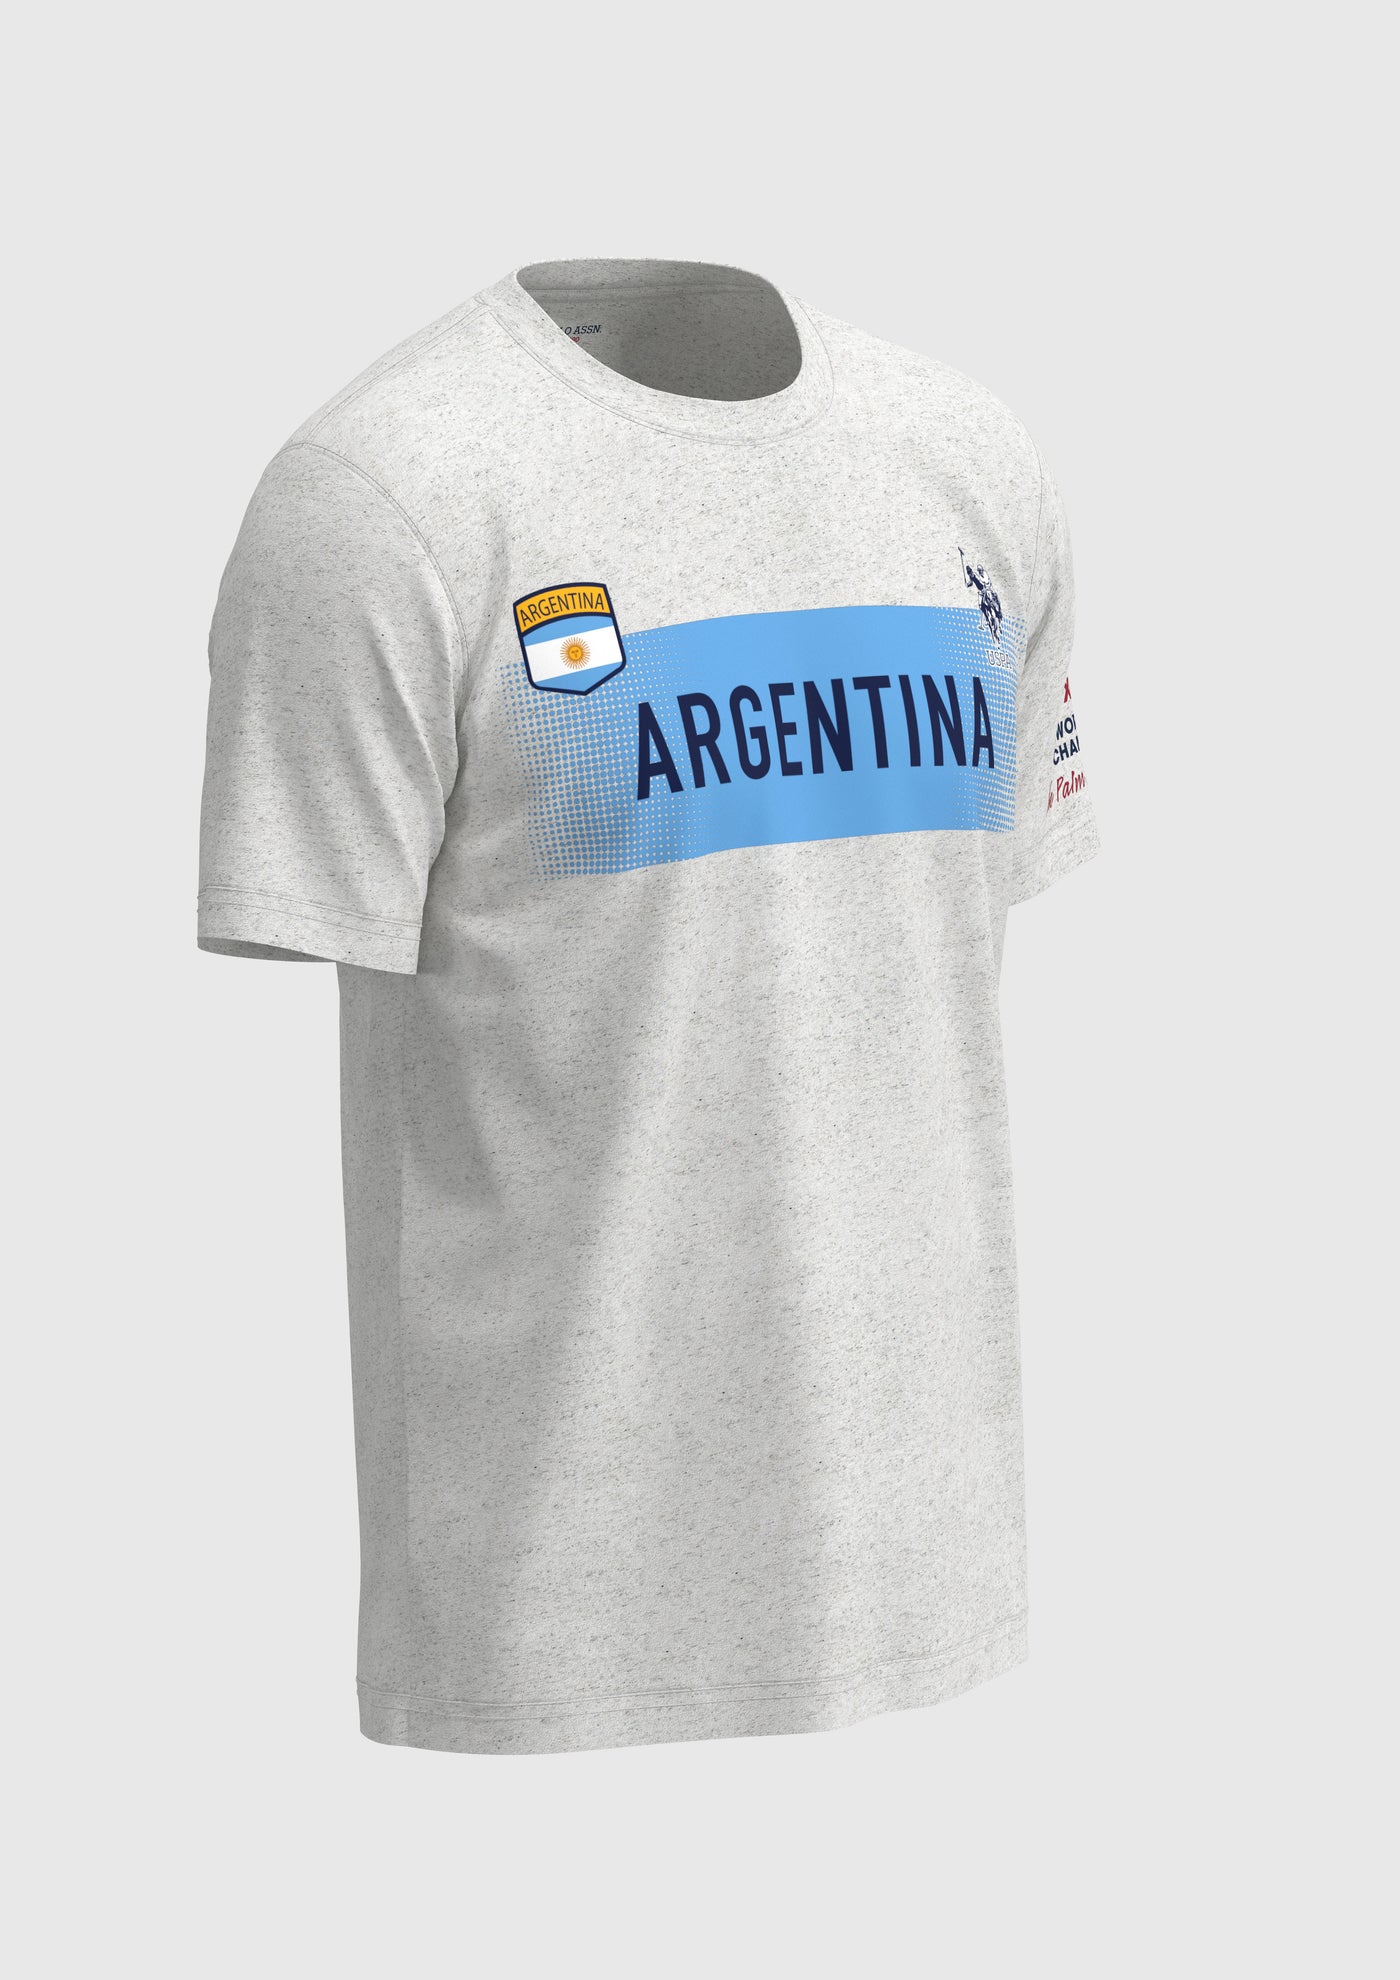 FIP TEAM SHIRT - ARGENTINA